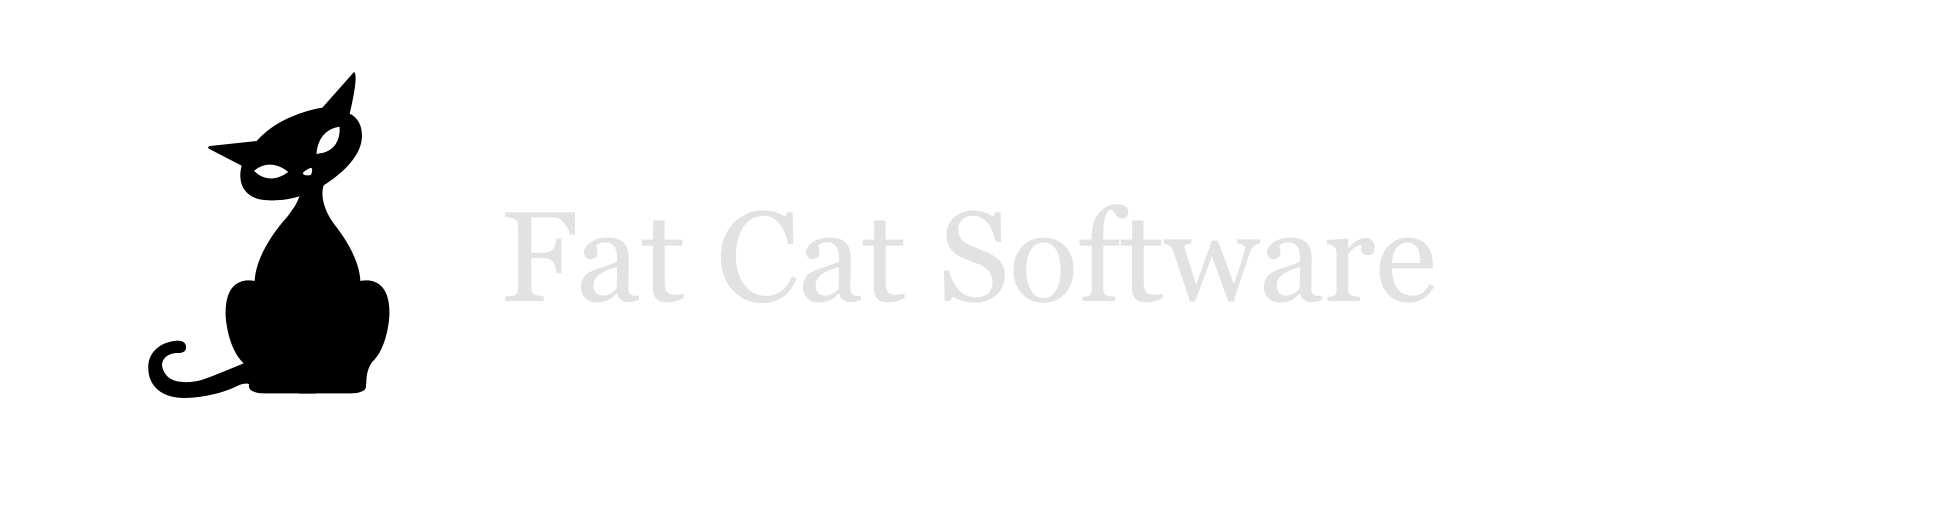 Fat Cat Software